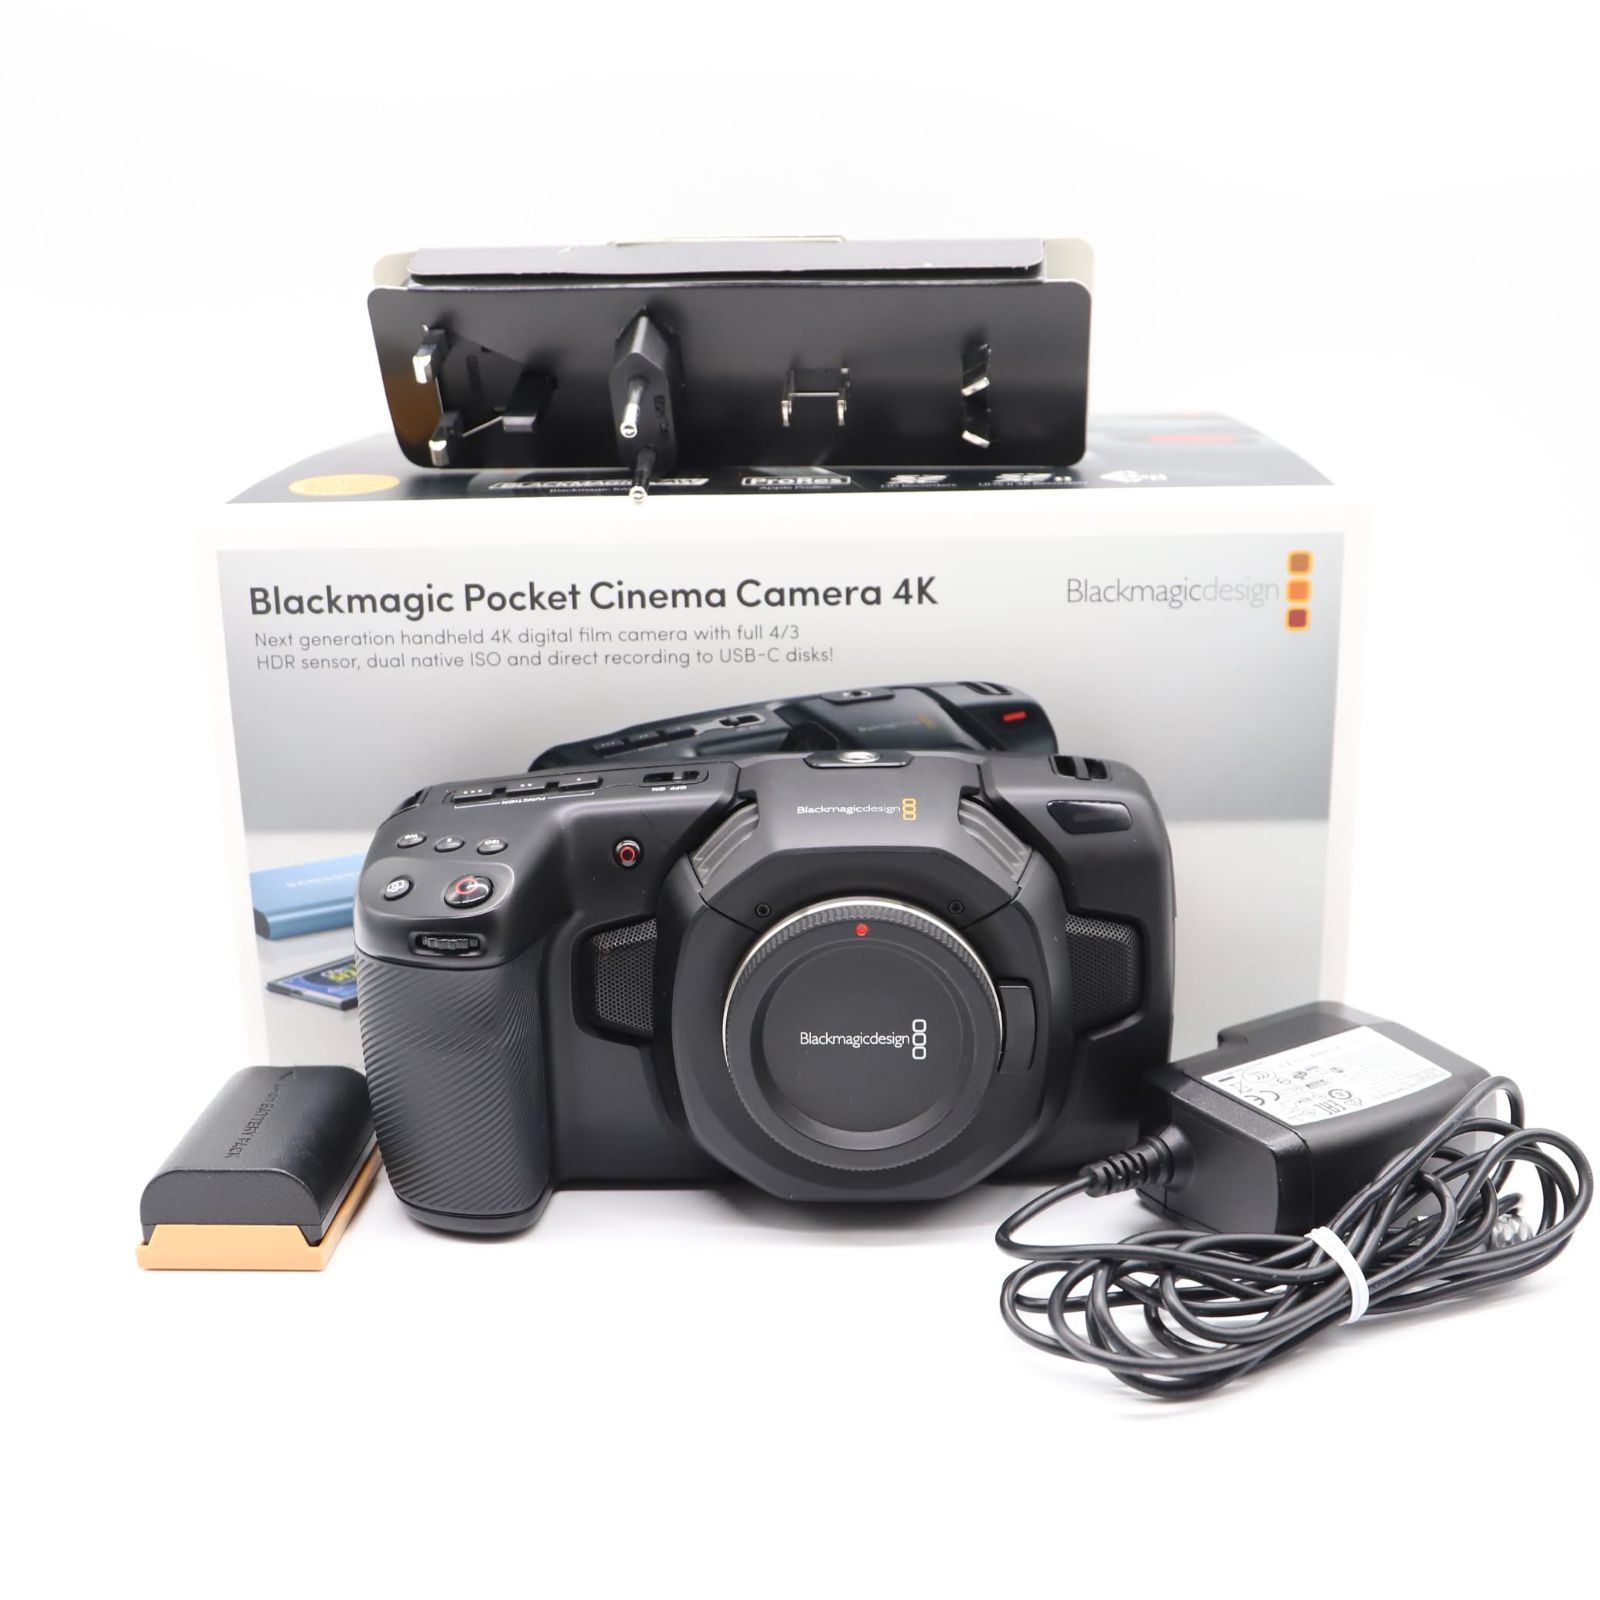 BMPCC 6K G2 ブラックマジックデザイン(付属品多数) - ビデオカメラ